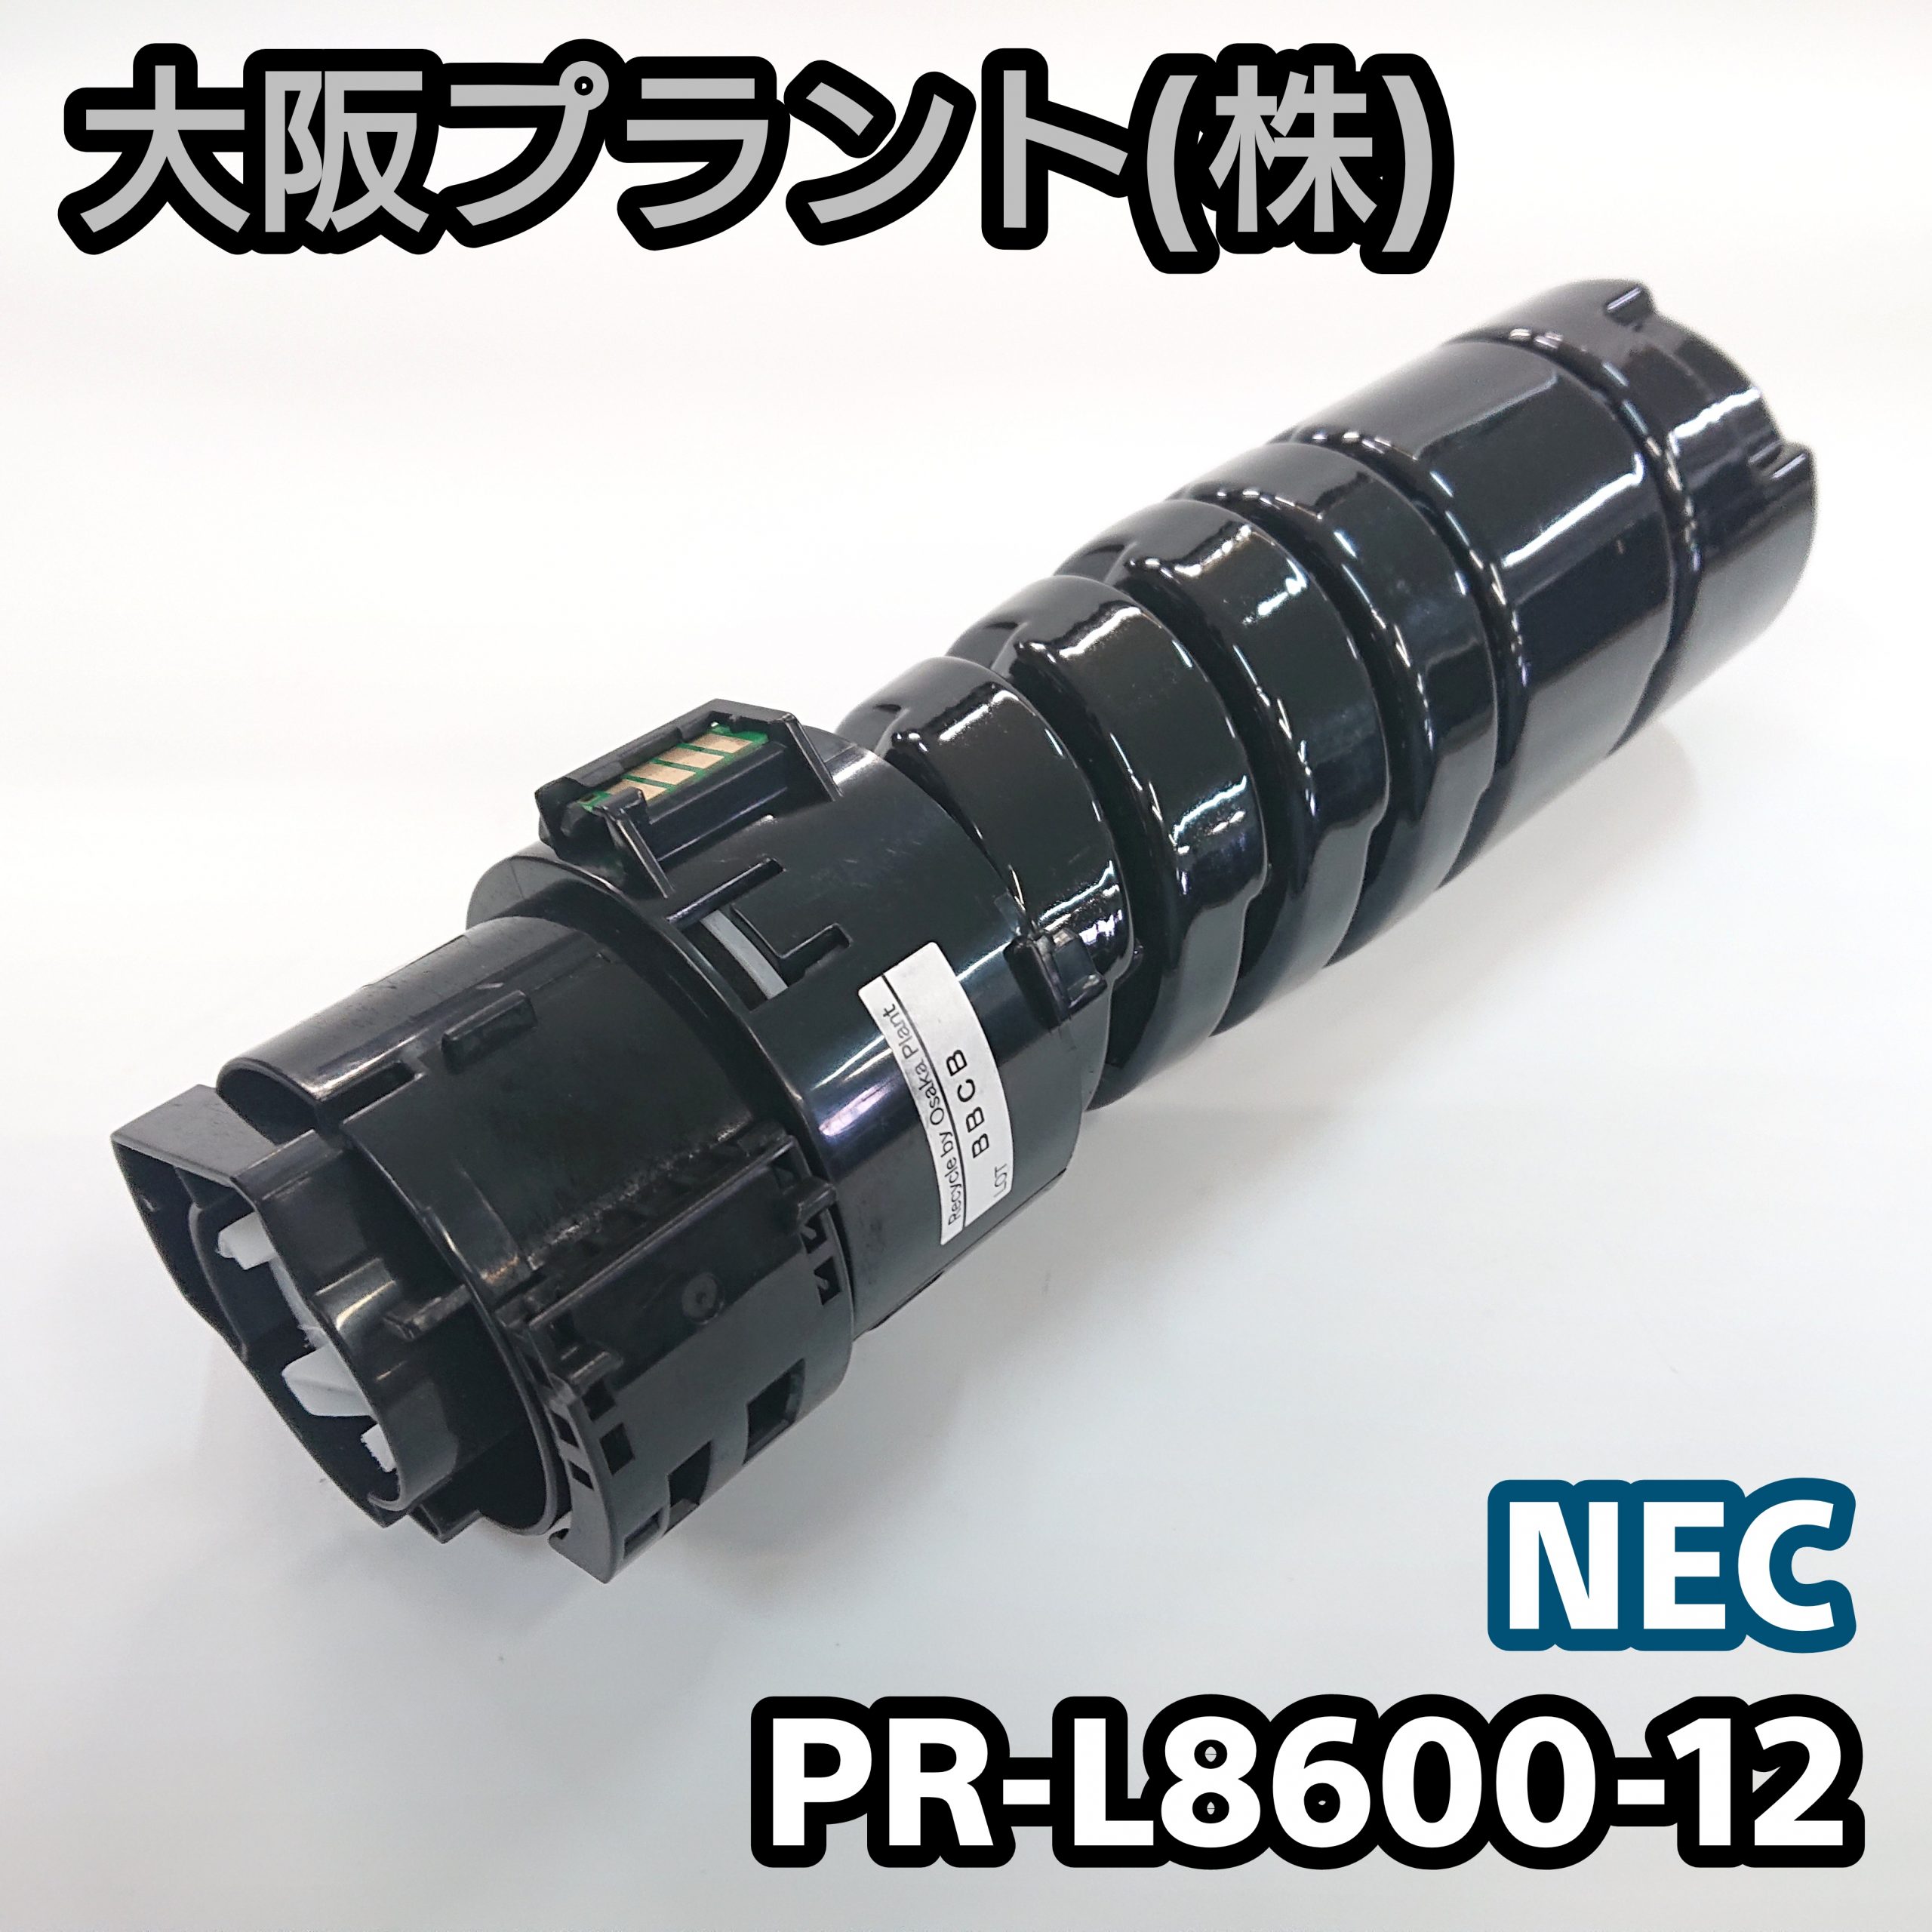 NEC PR-L8600-12